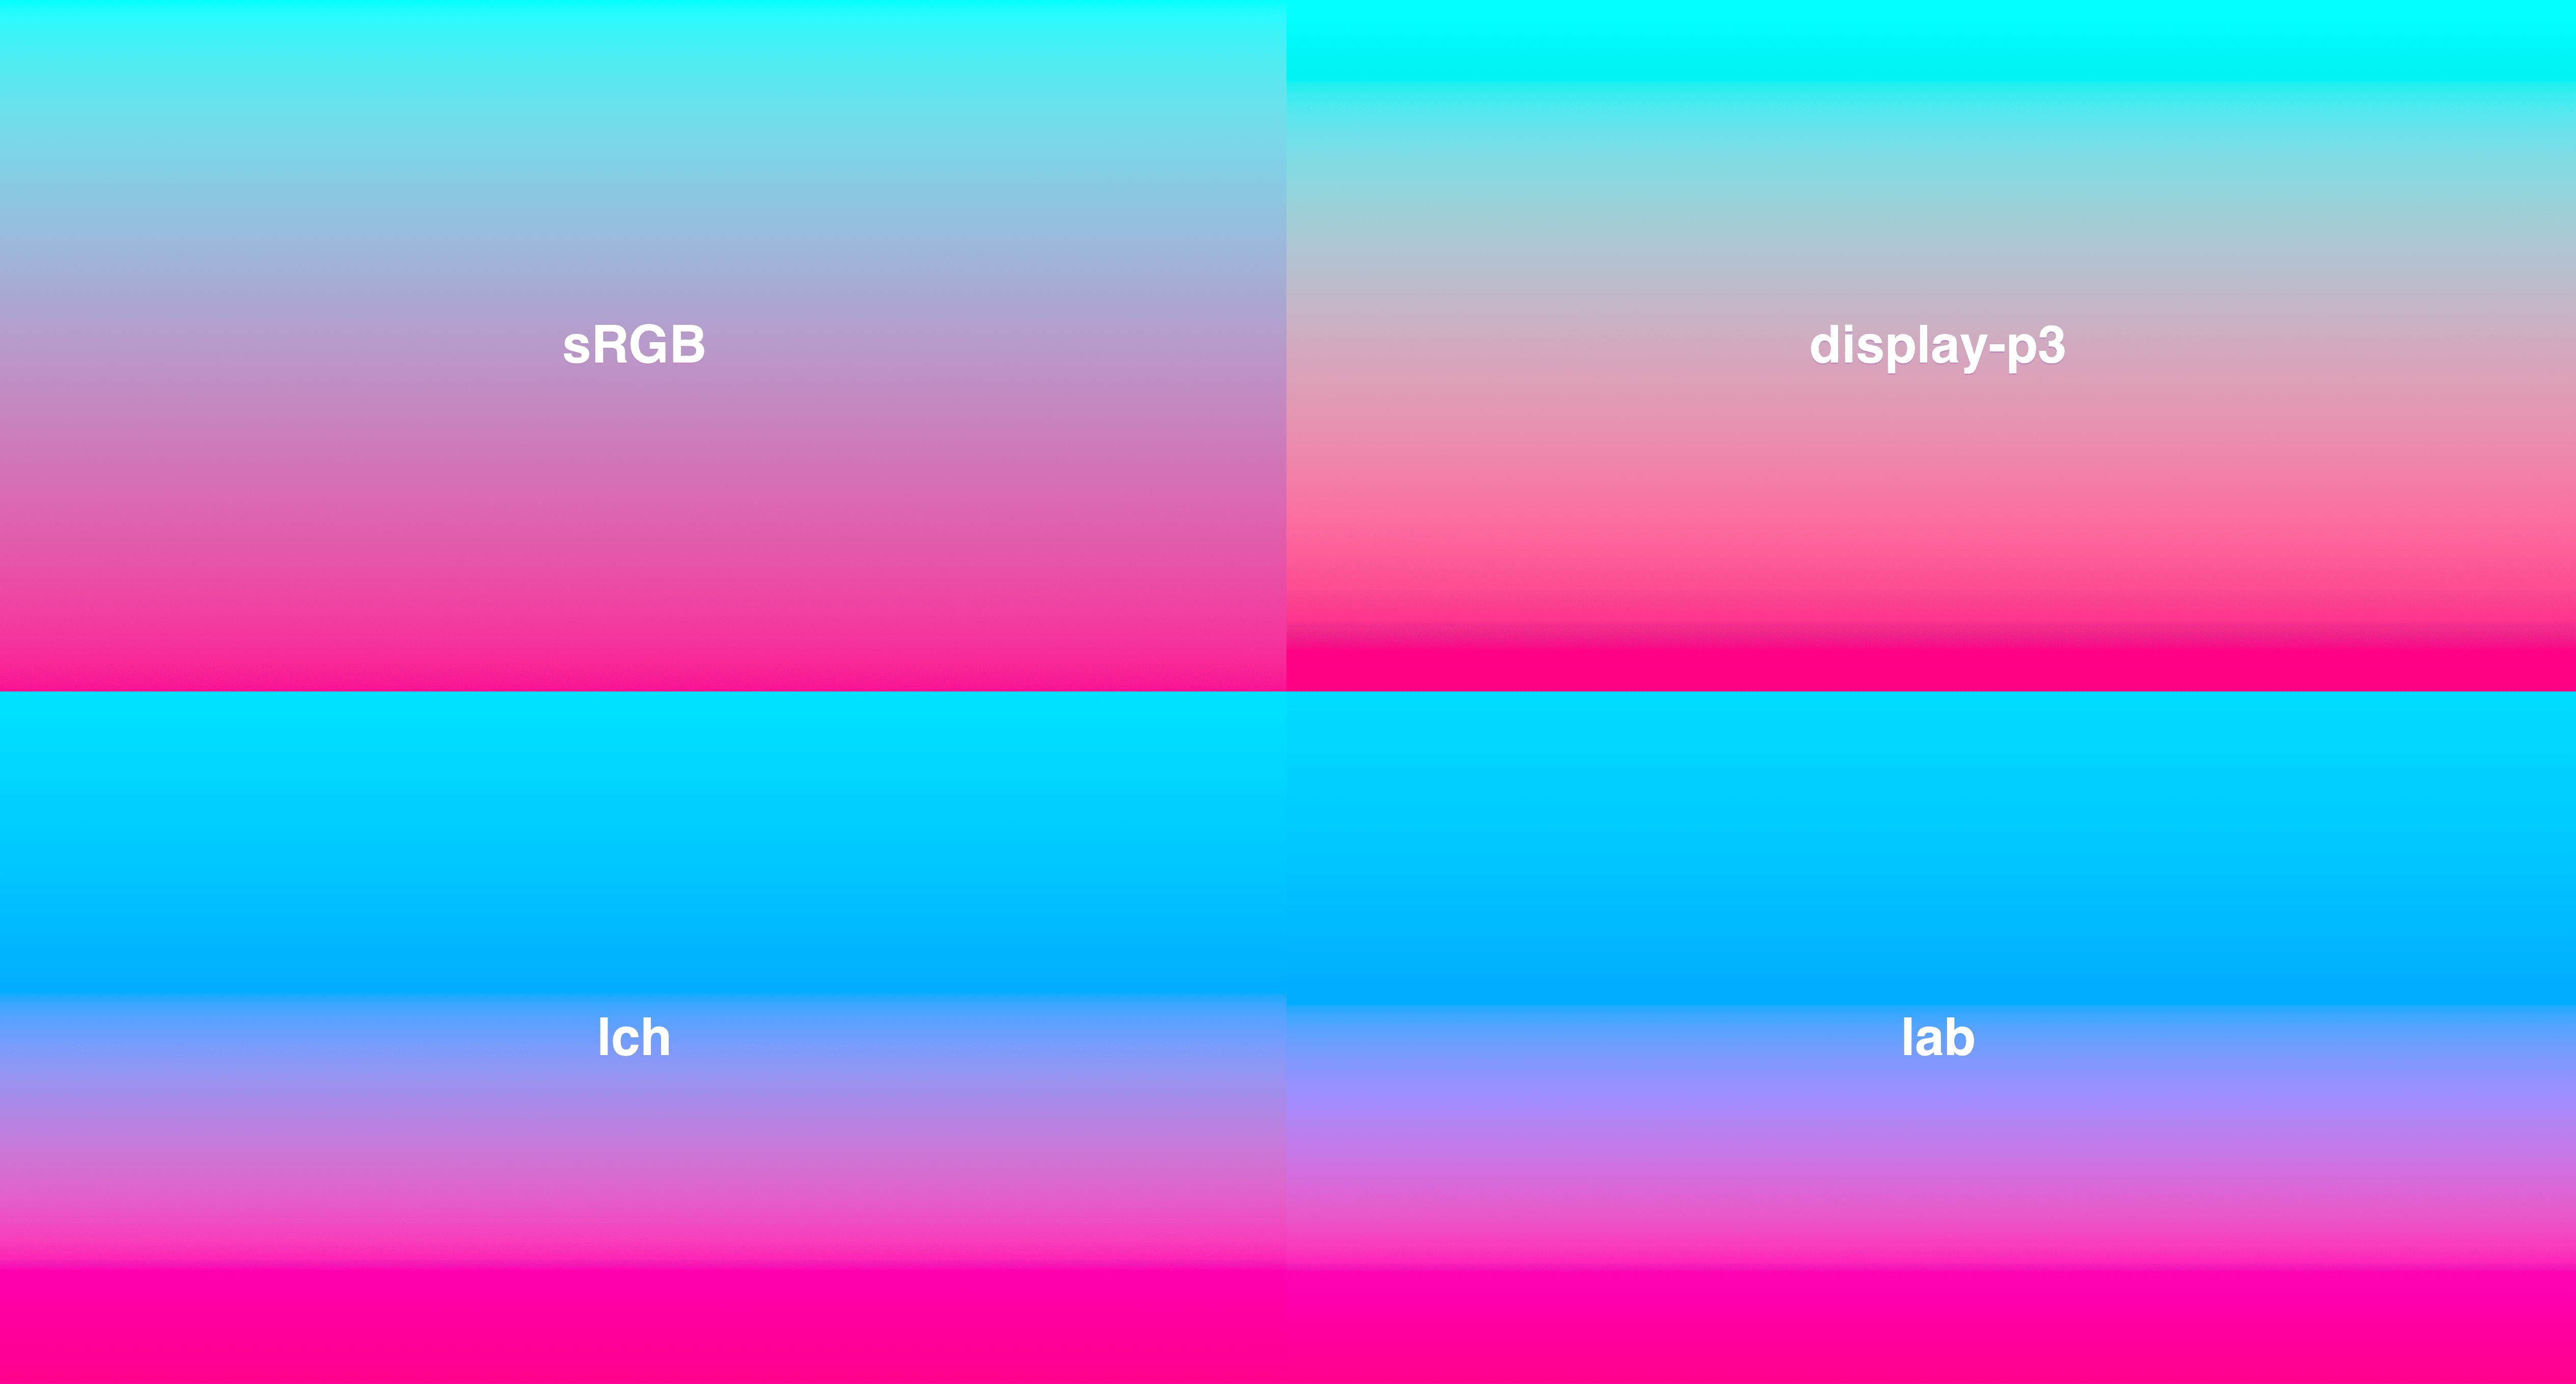 网格中的 4 种渐变效果，全部由青色到深粉色。LCH 和 LAB 的活力更一致，其中 sRGB 中间的饱和度偏低。